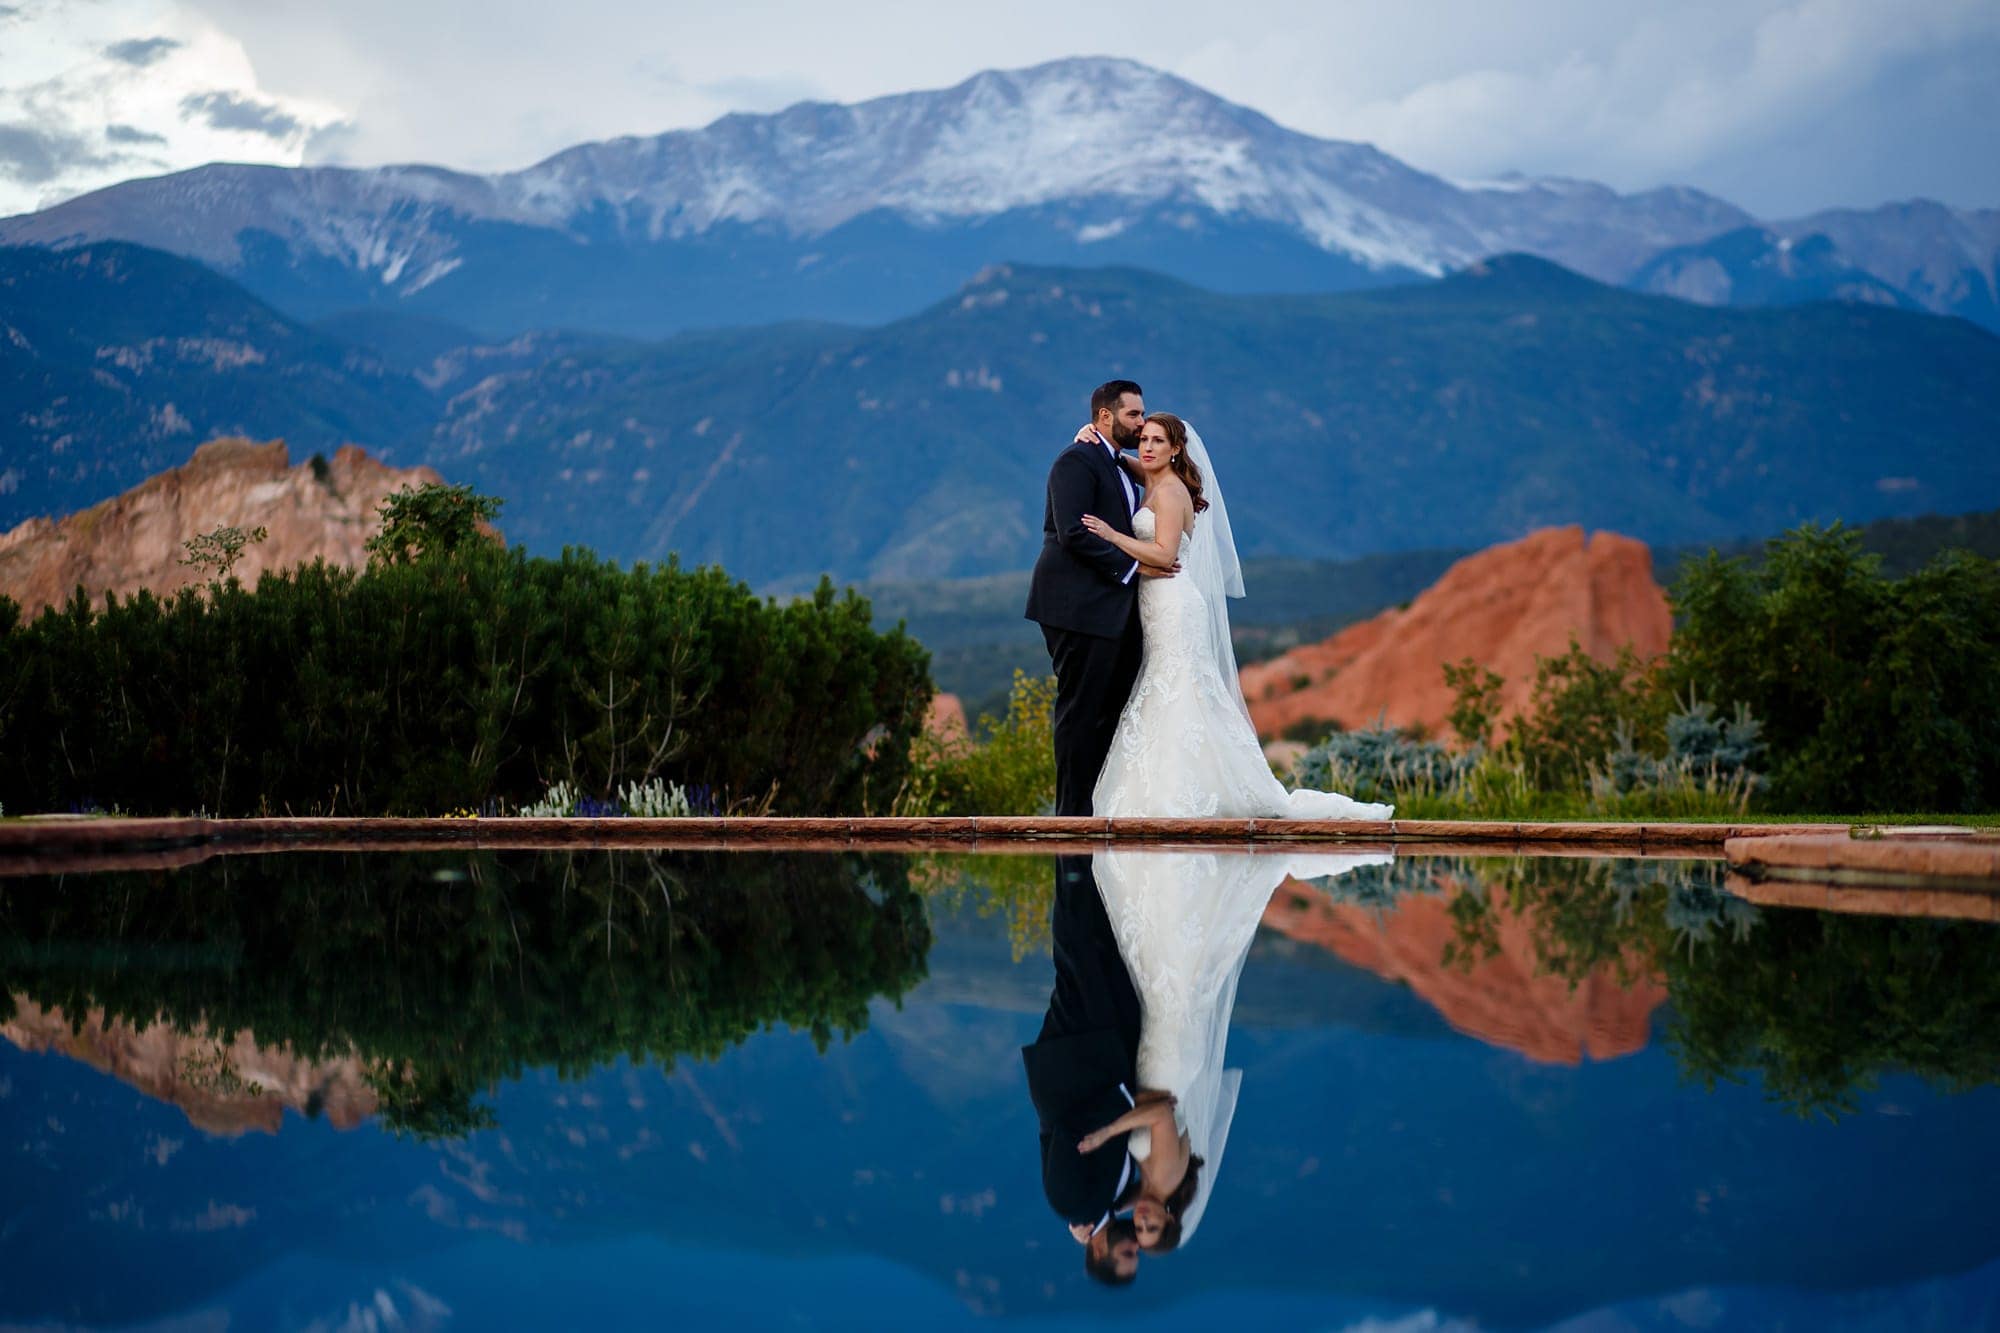 Jewish Wedding in Colorado Springs | Devan & Joshua